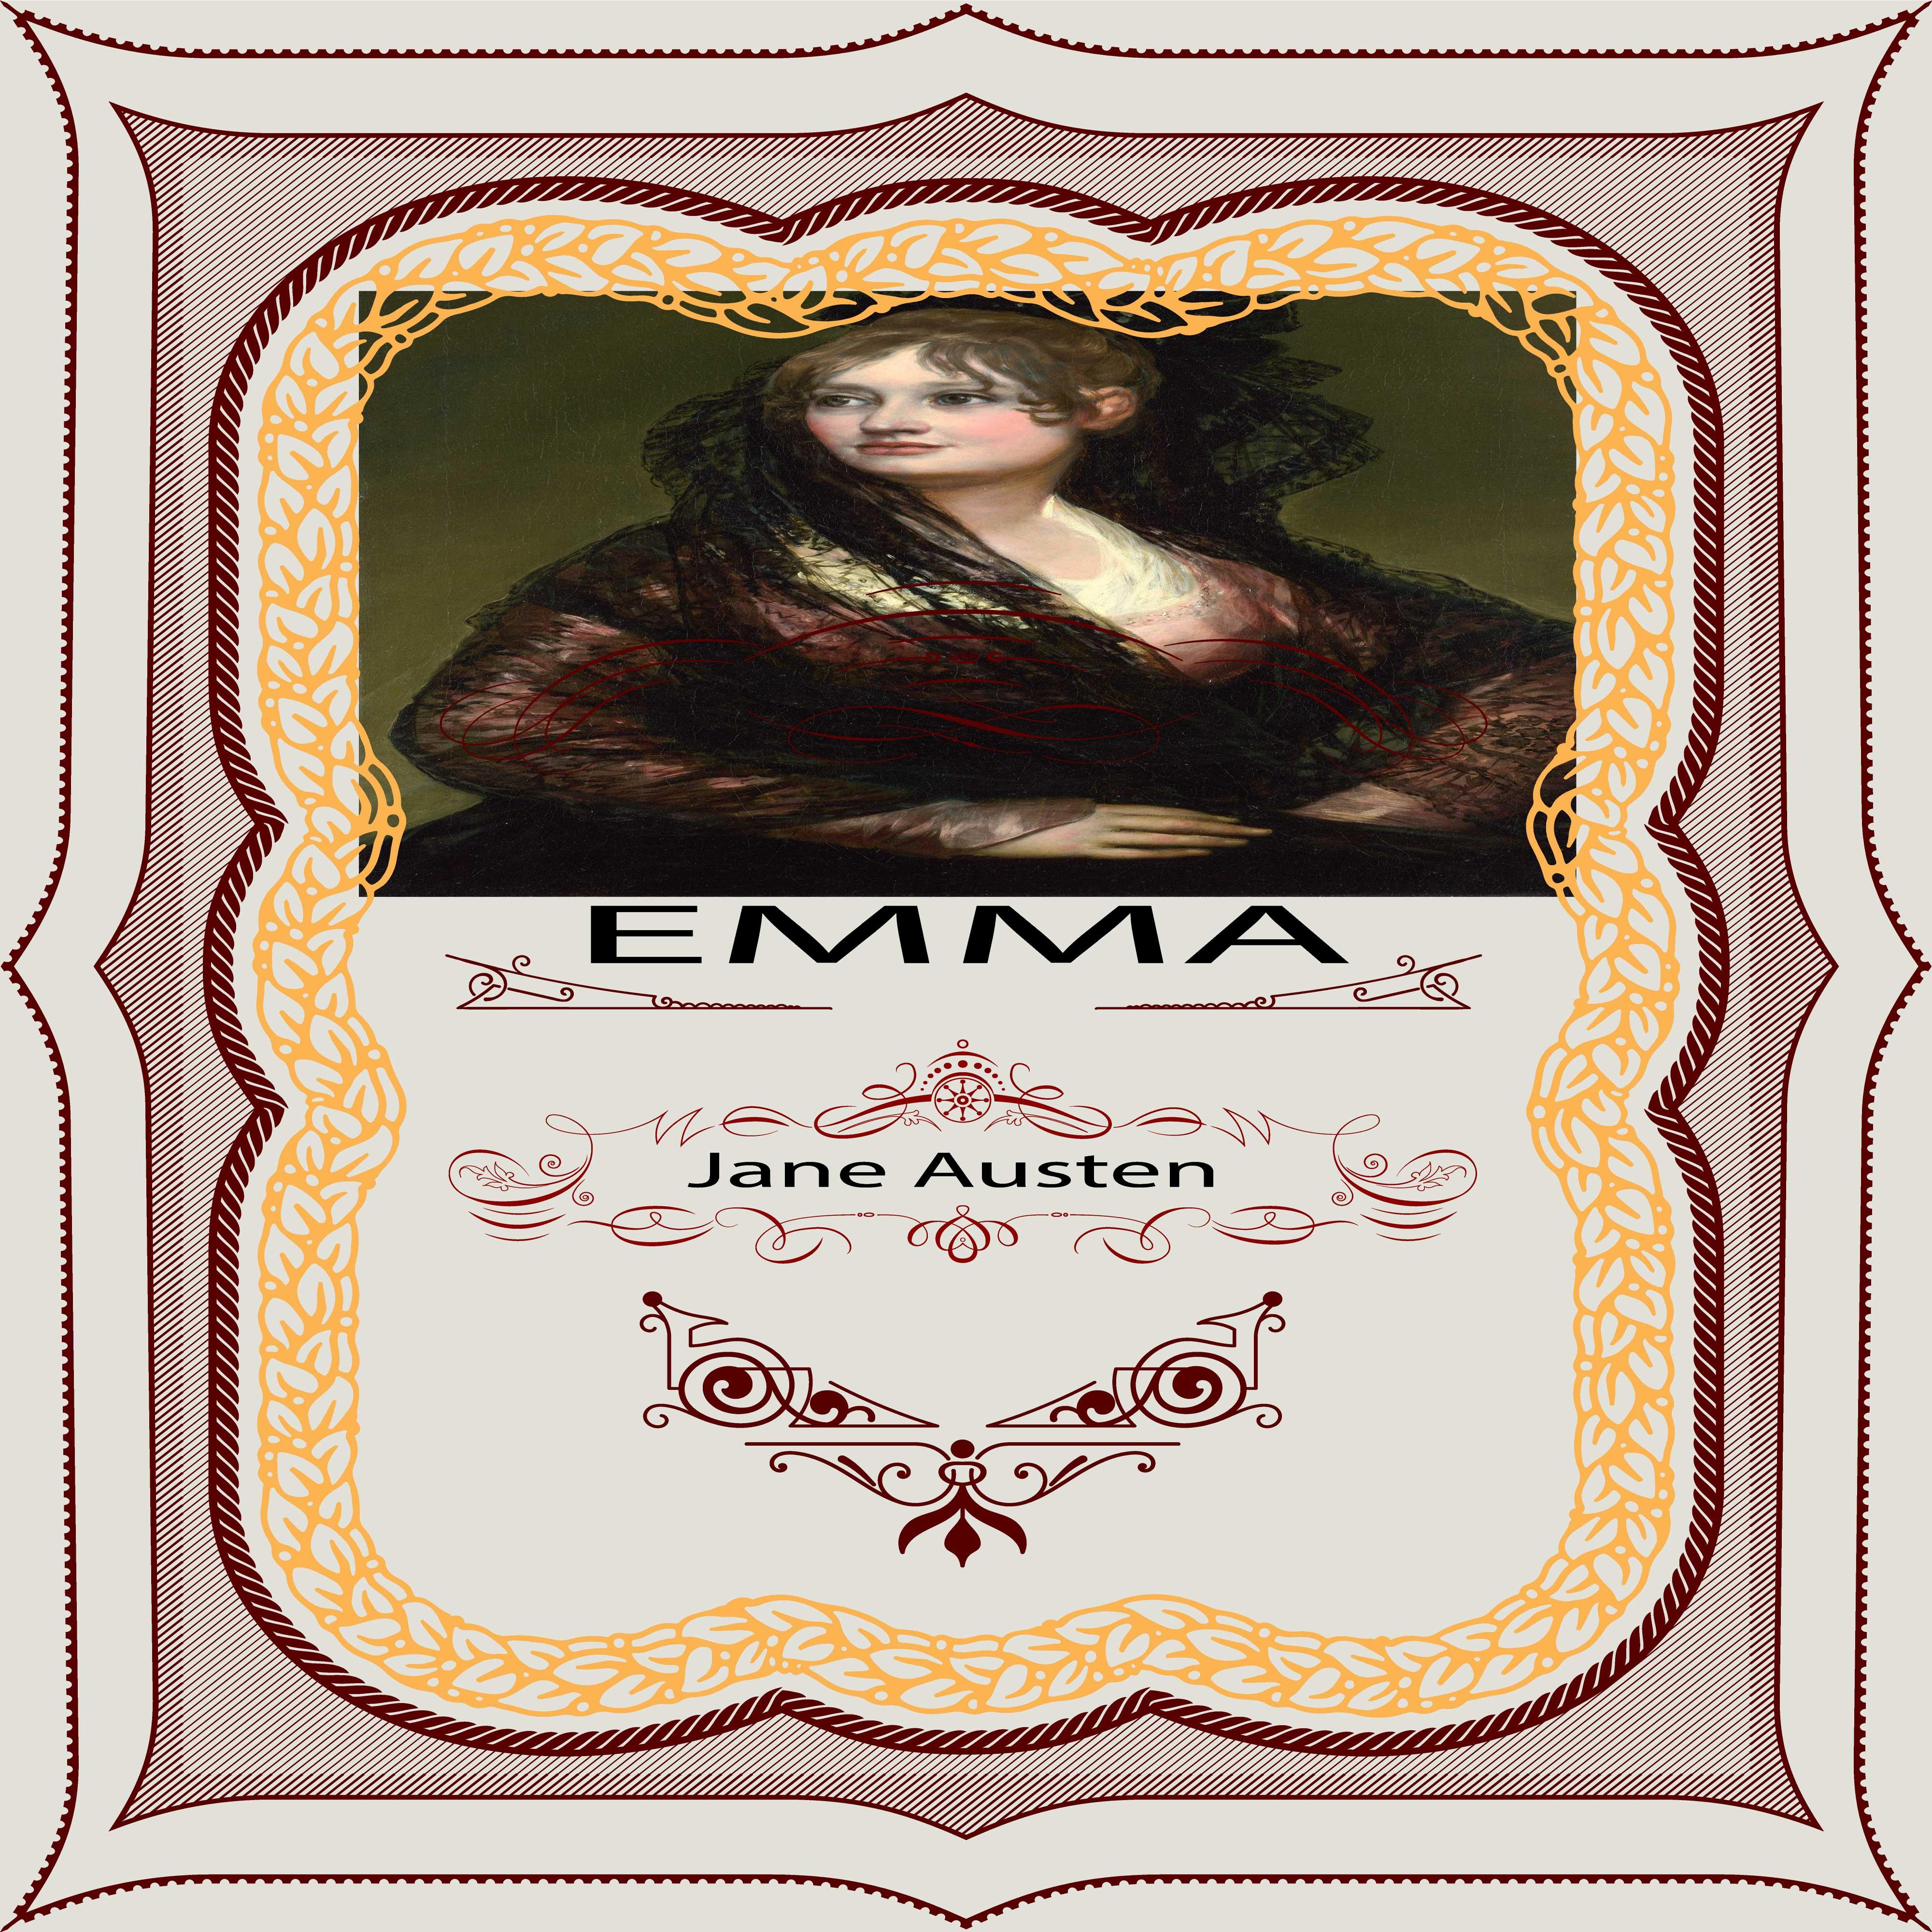 Jane Austen: Emma, Pt. 1, Chapter 16